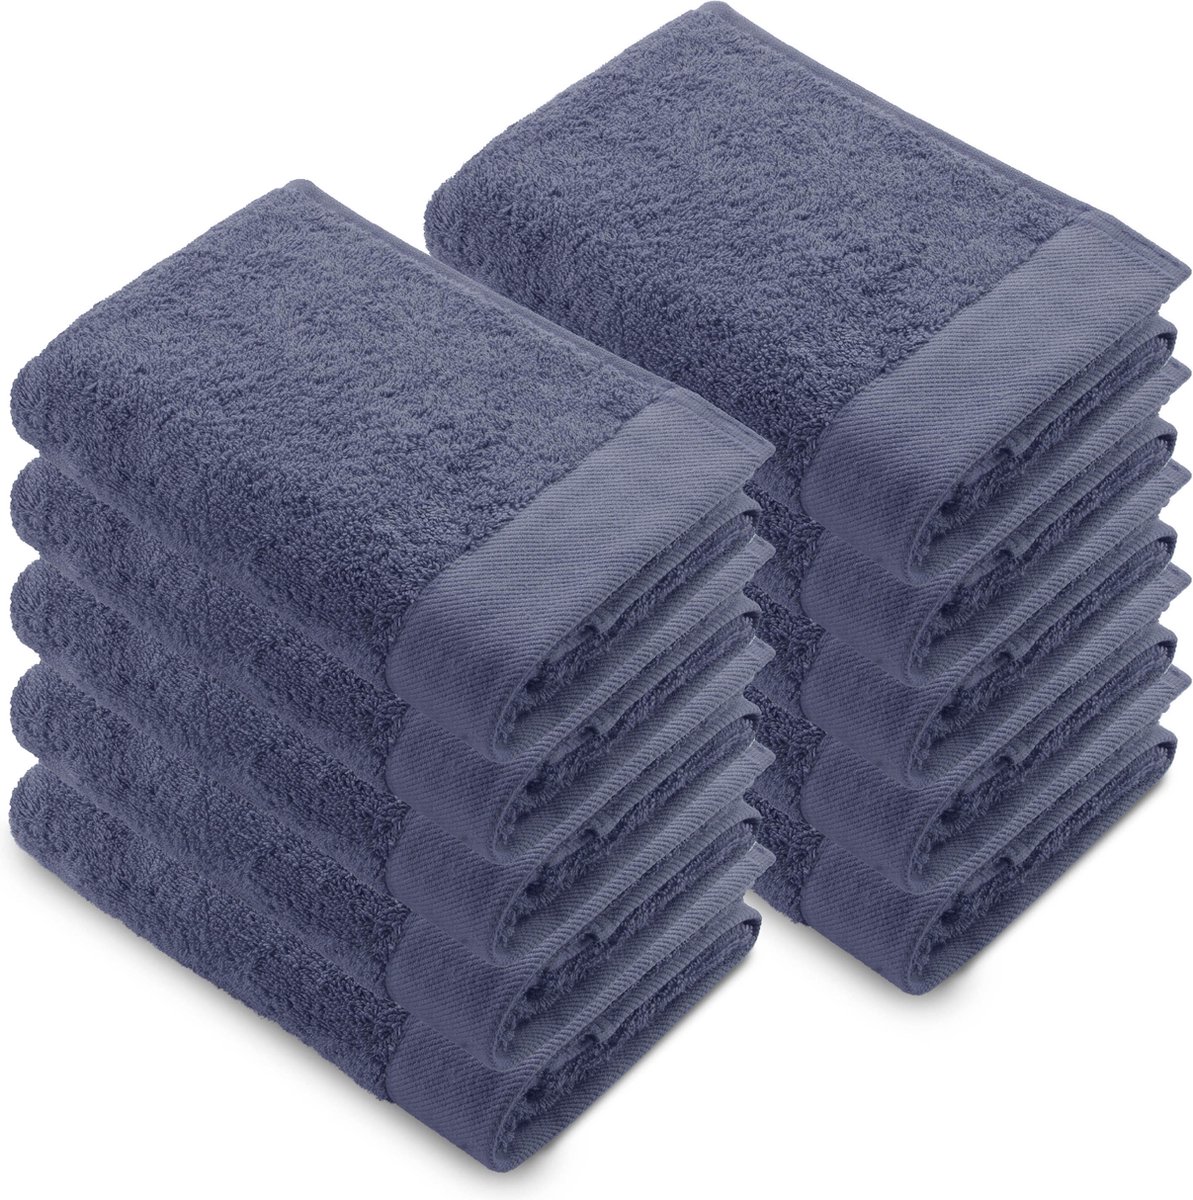 Walra Remade Handdoeken 50x100 - set van 10 - Zware kwaliteit 550 g/m2 - Blauw